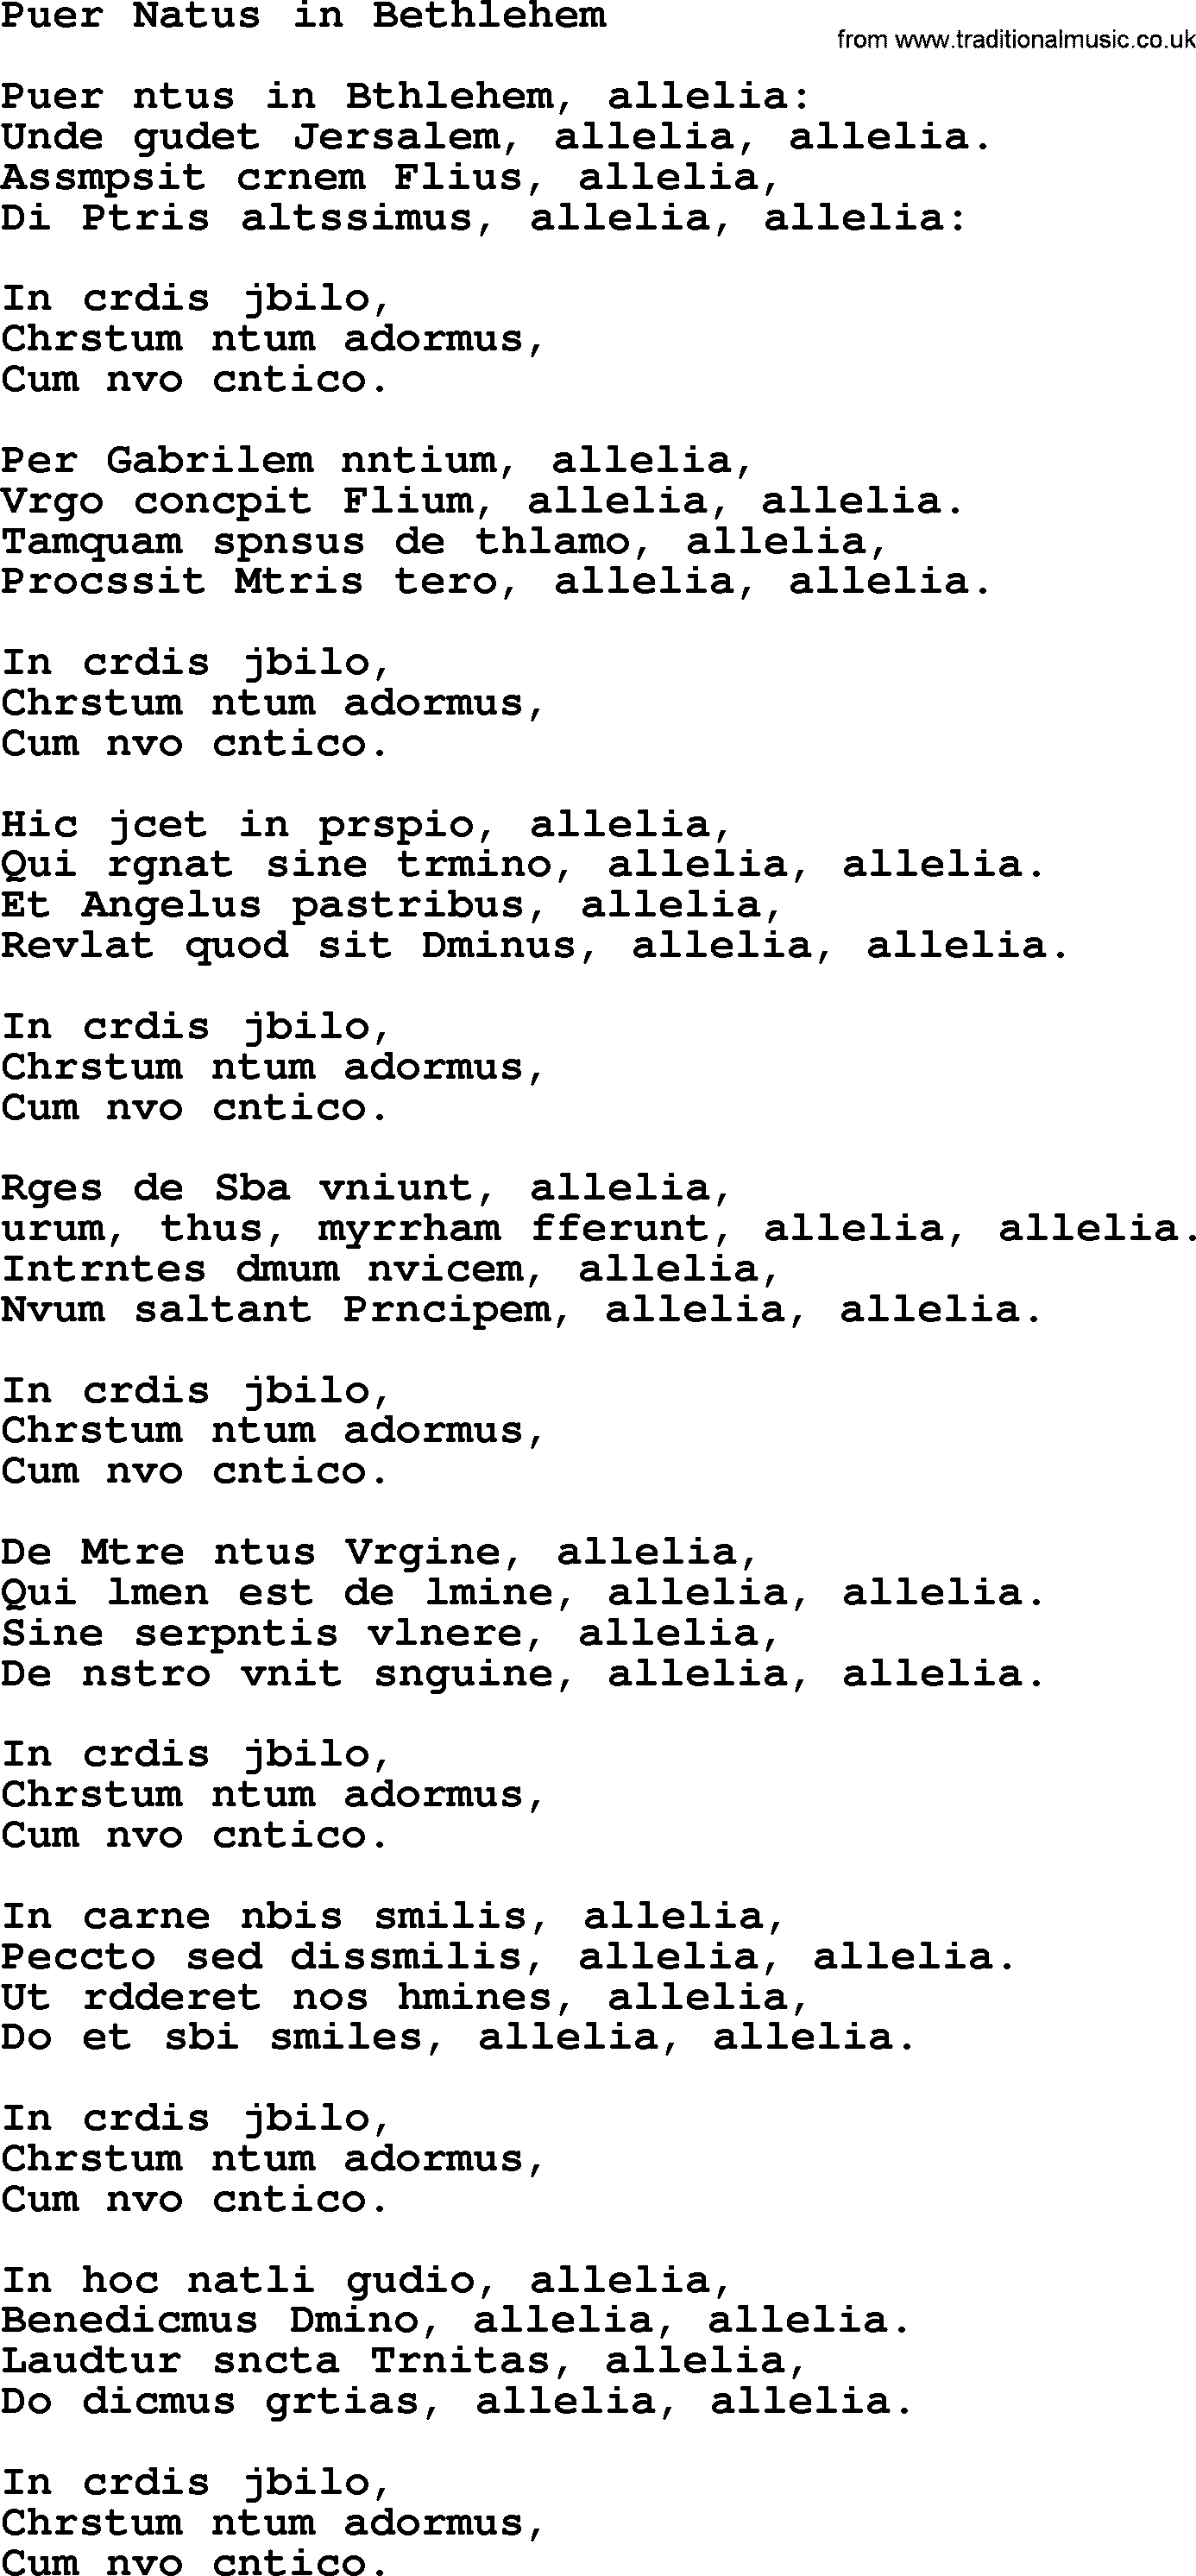 Catholic Hymn: Puer Natus In Bethlehem lyrics with PDF